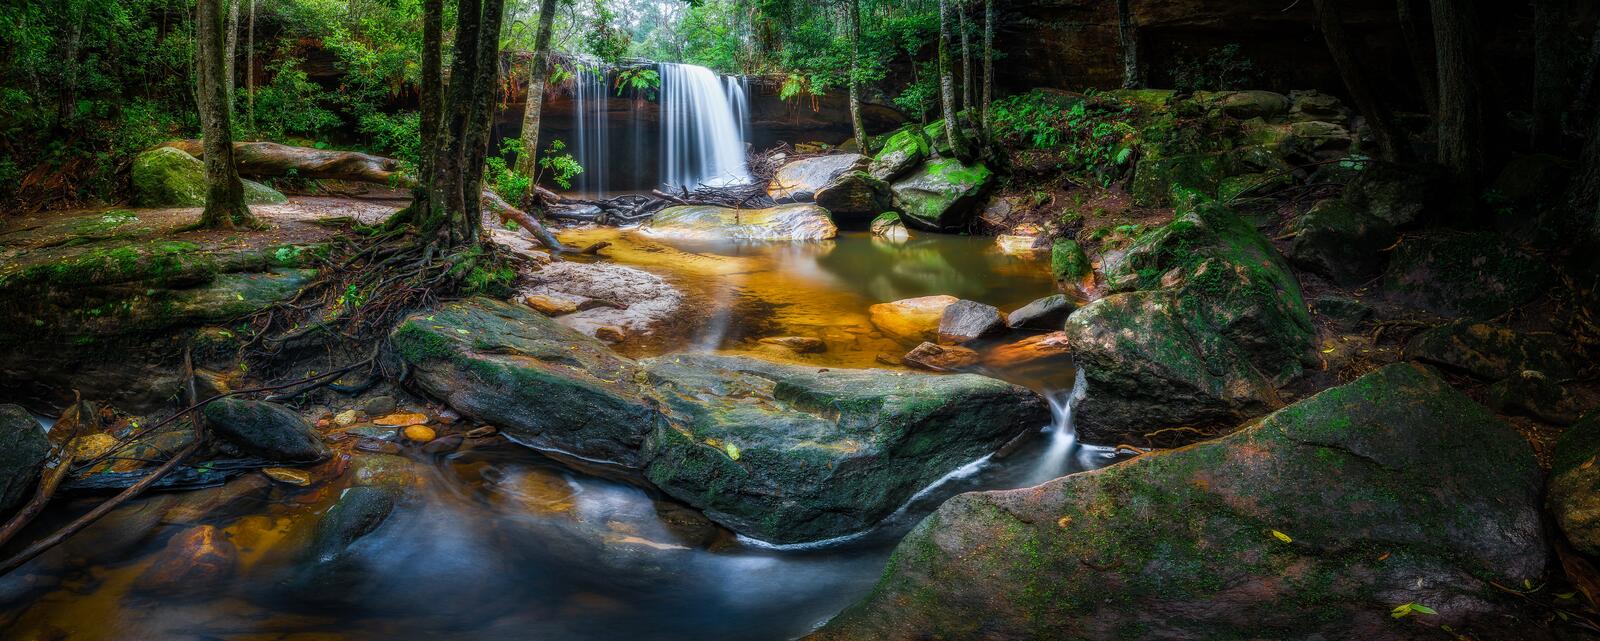 Бесплатное фото Скачать картинку водопада, австралия для рабочего стола бесплатно.